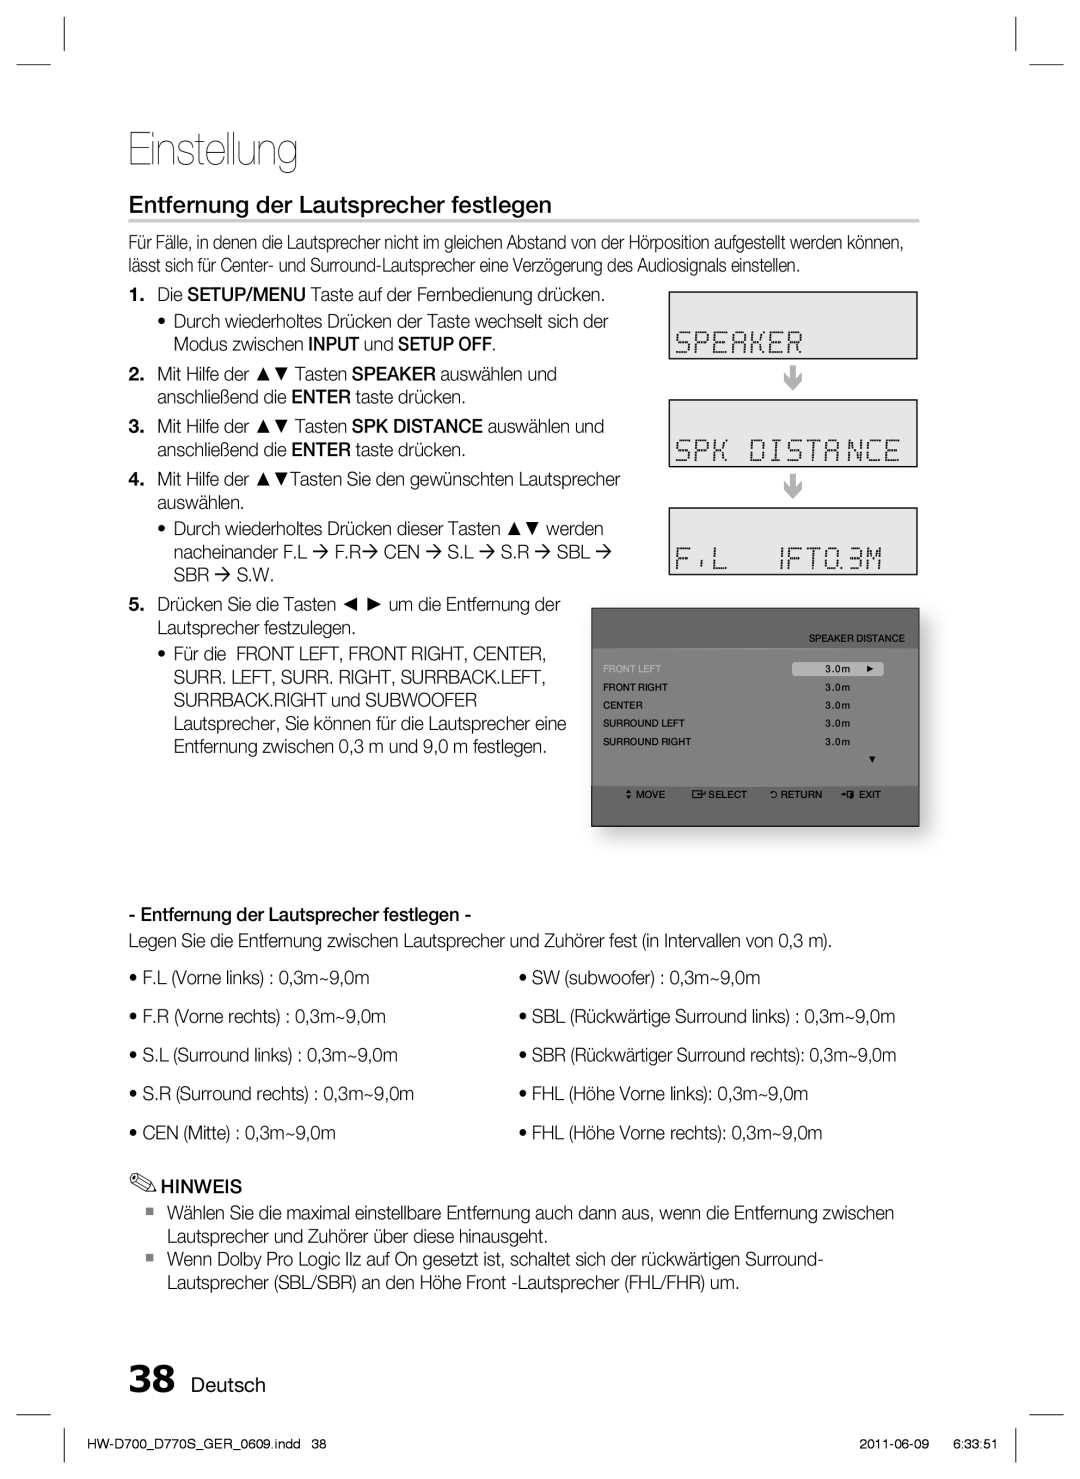 Samsung HW-D770S/EN, HW-D700/EN manual Entfernung der Lautsprecher festlegen, Deutsch, Einstellung 